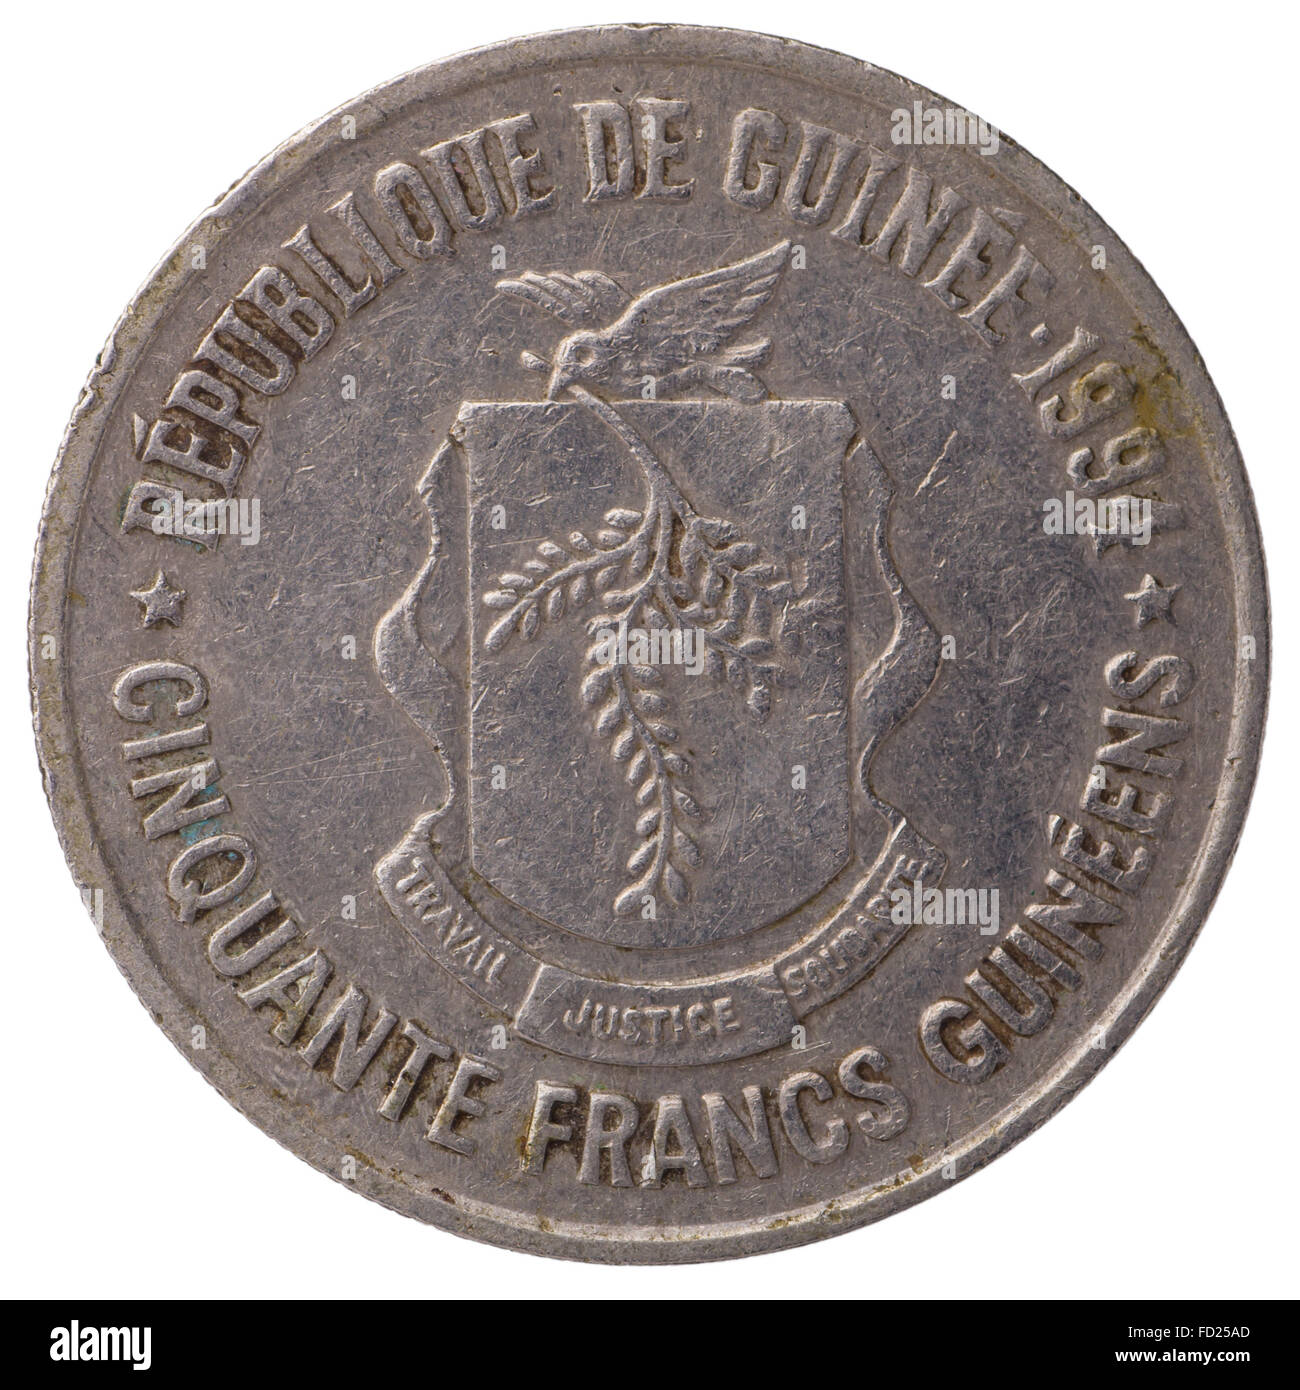 50 franchi guineani coin, 1994, faccia, isolati su sfondo bianco Foto Stock